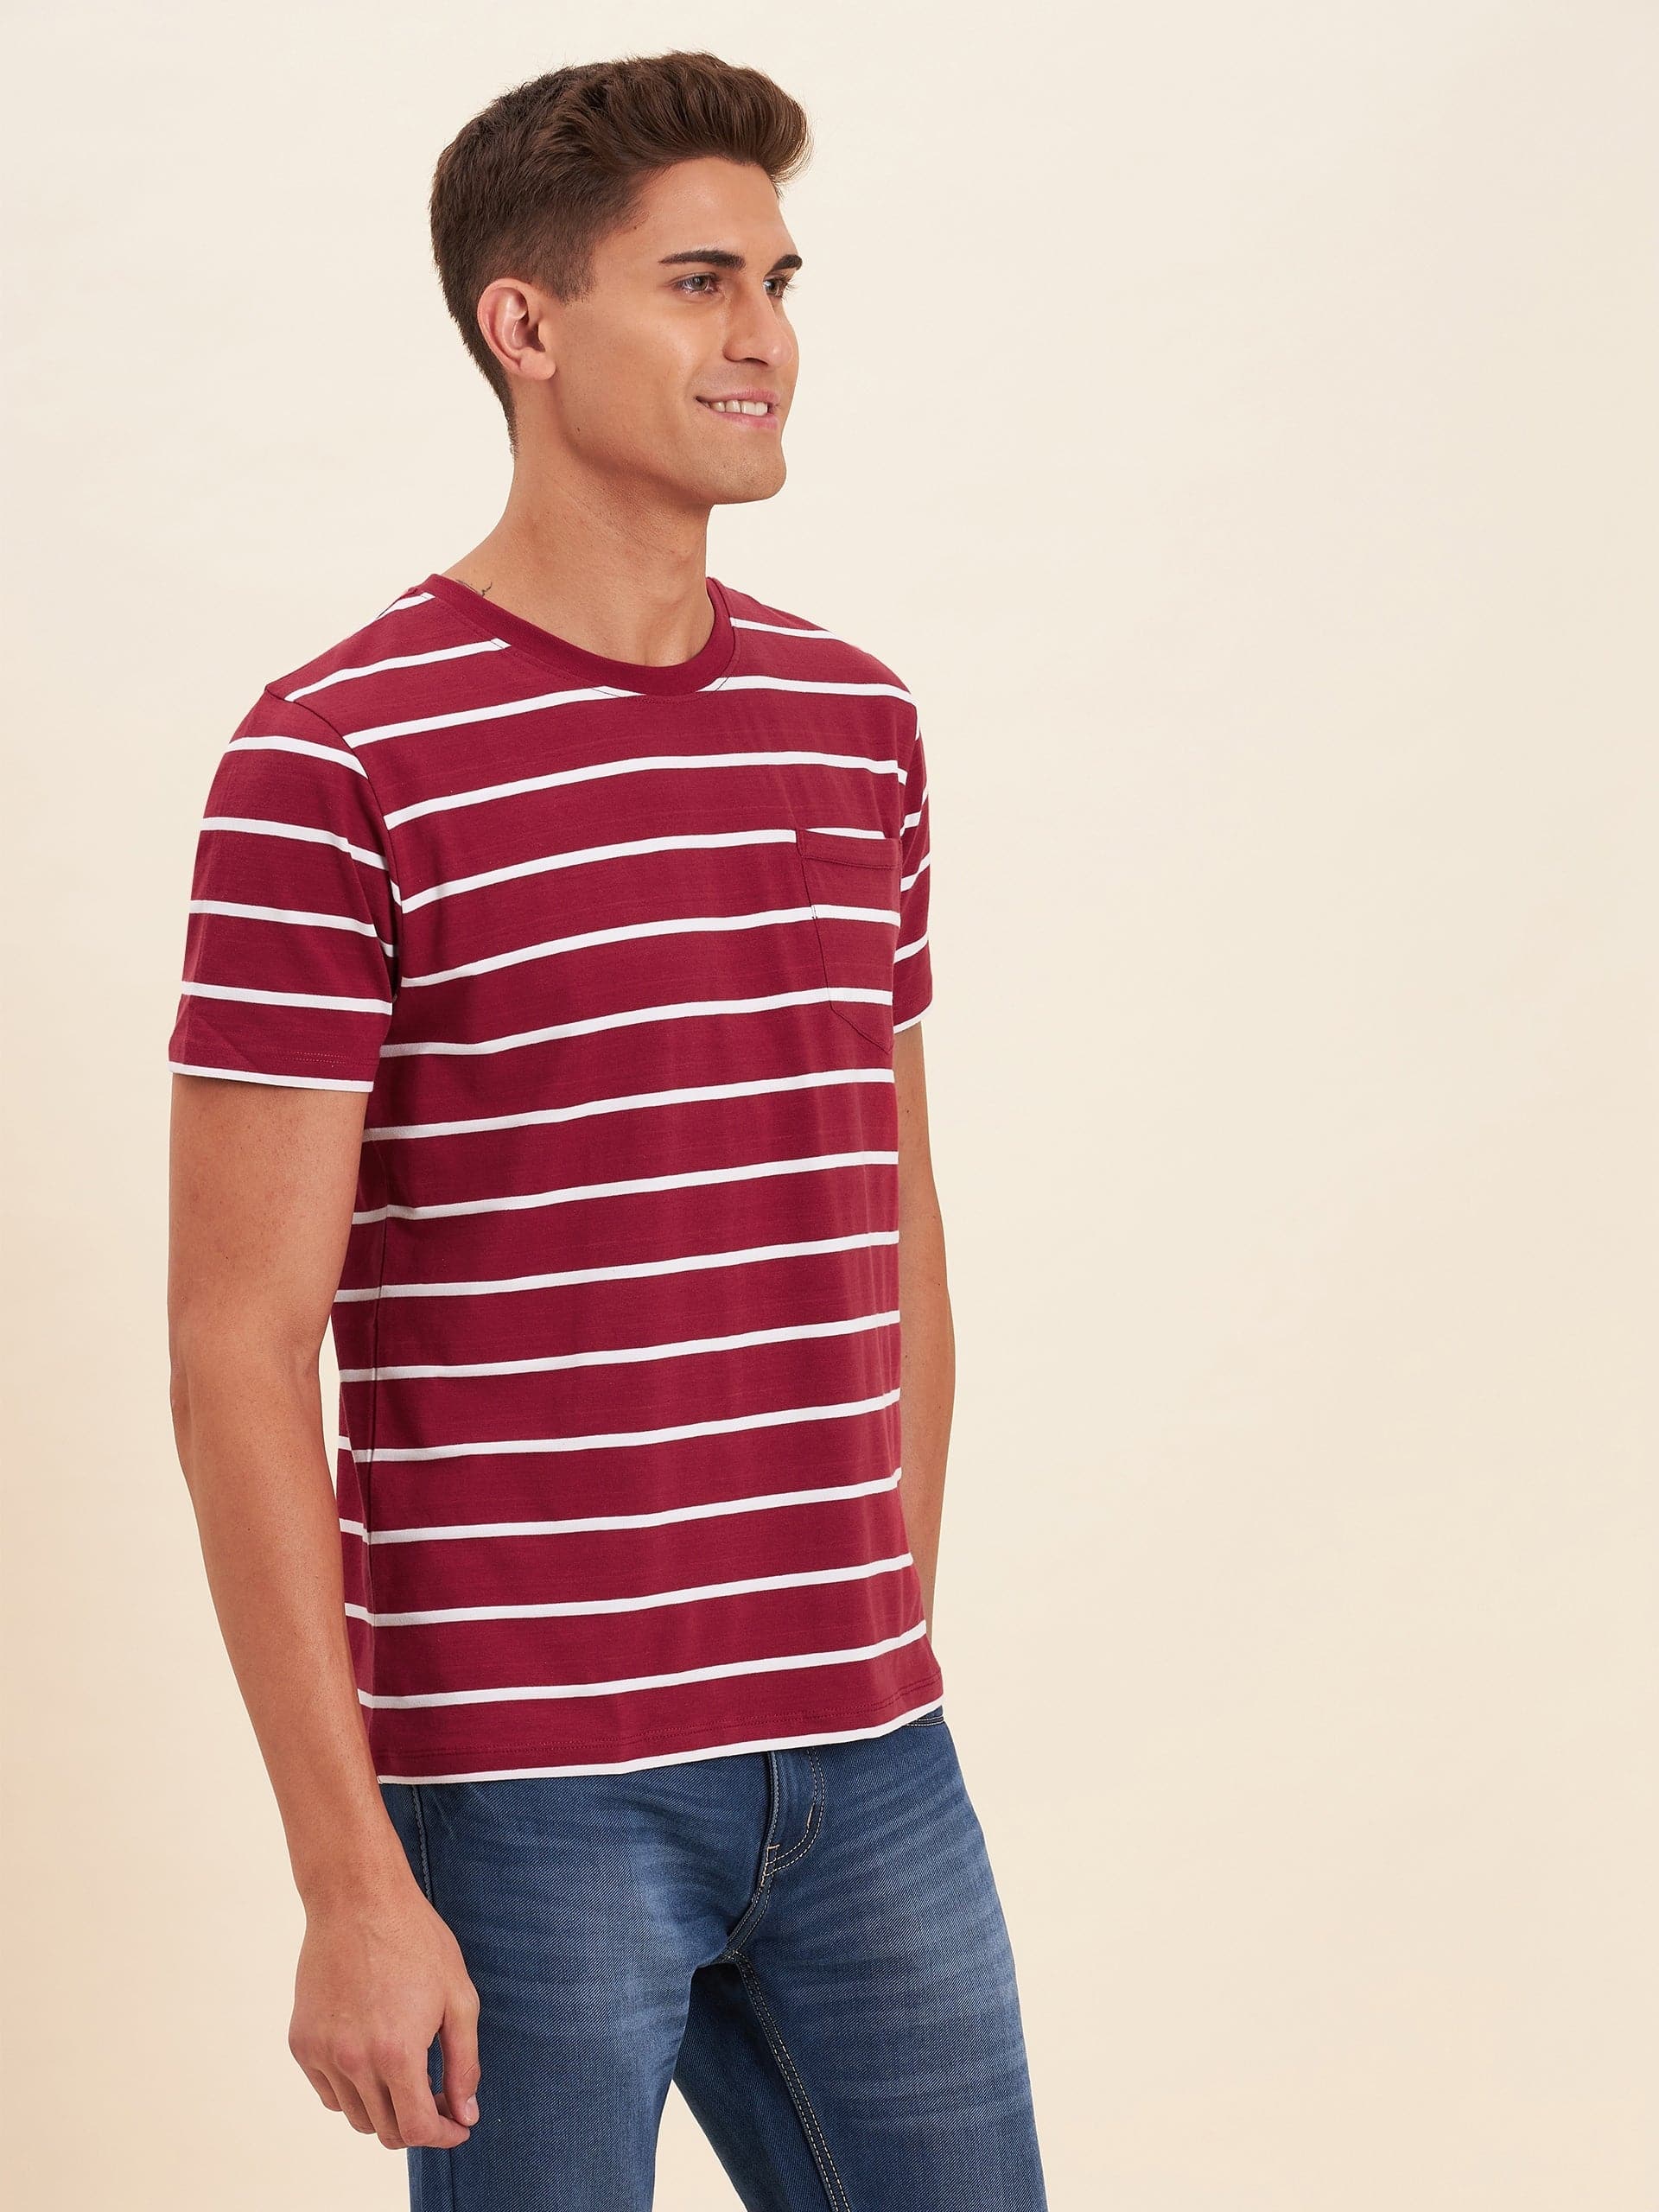 Men's Red & White Stripes Pocket Cotton T-Shirt - LYUSH-MASCLN